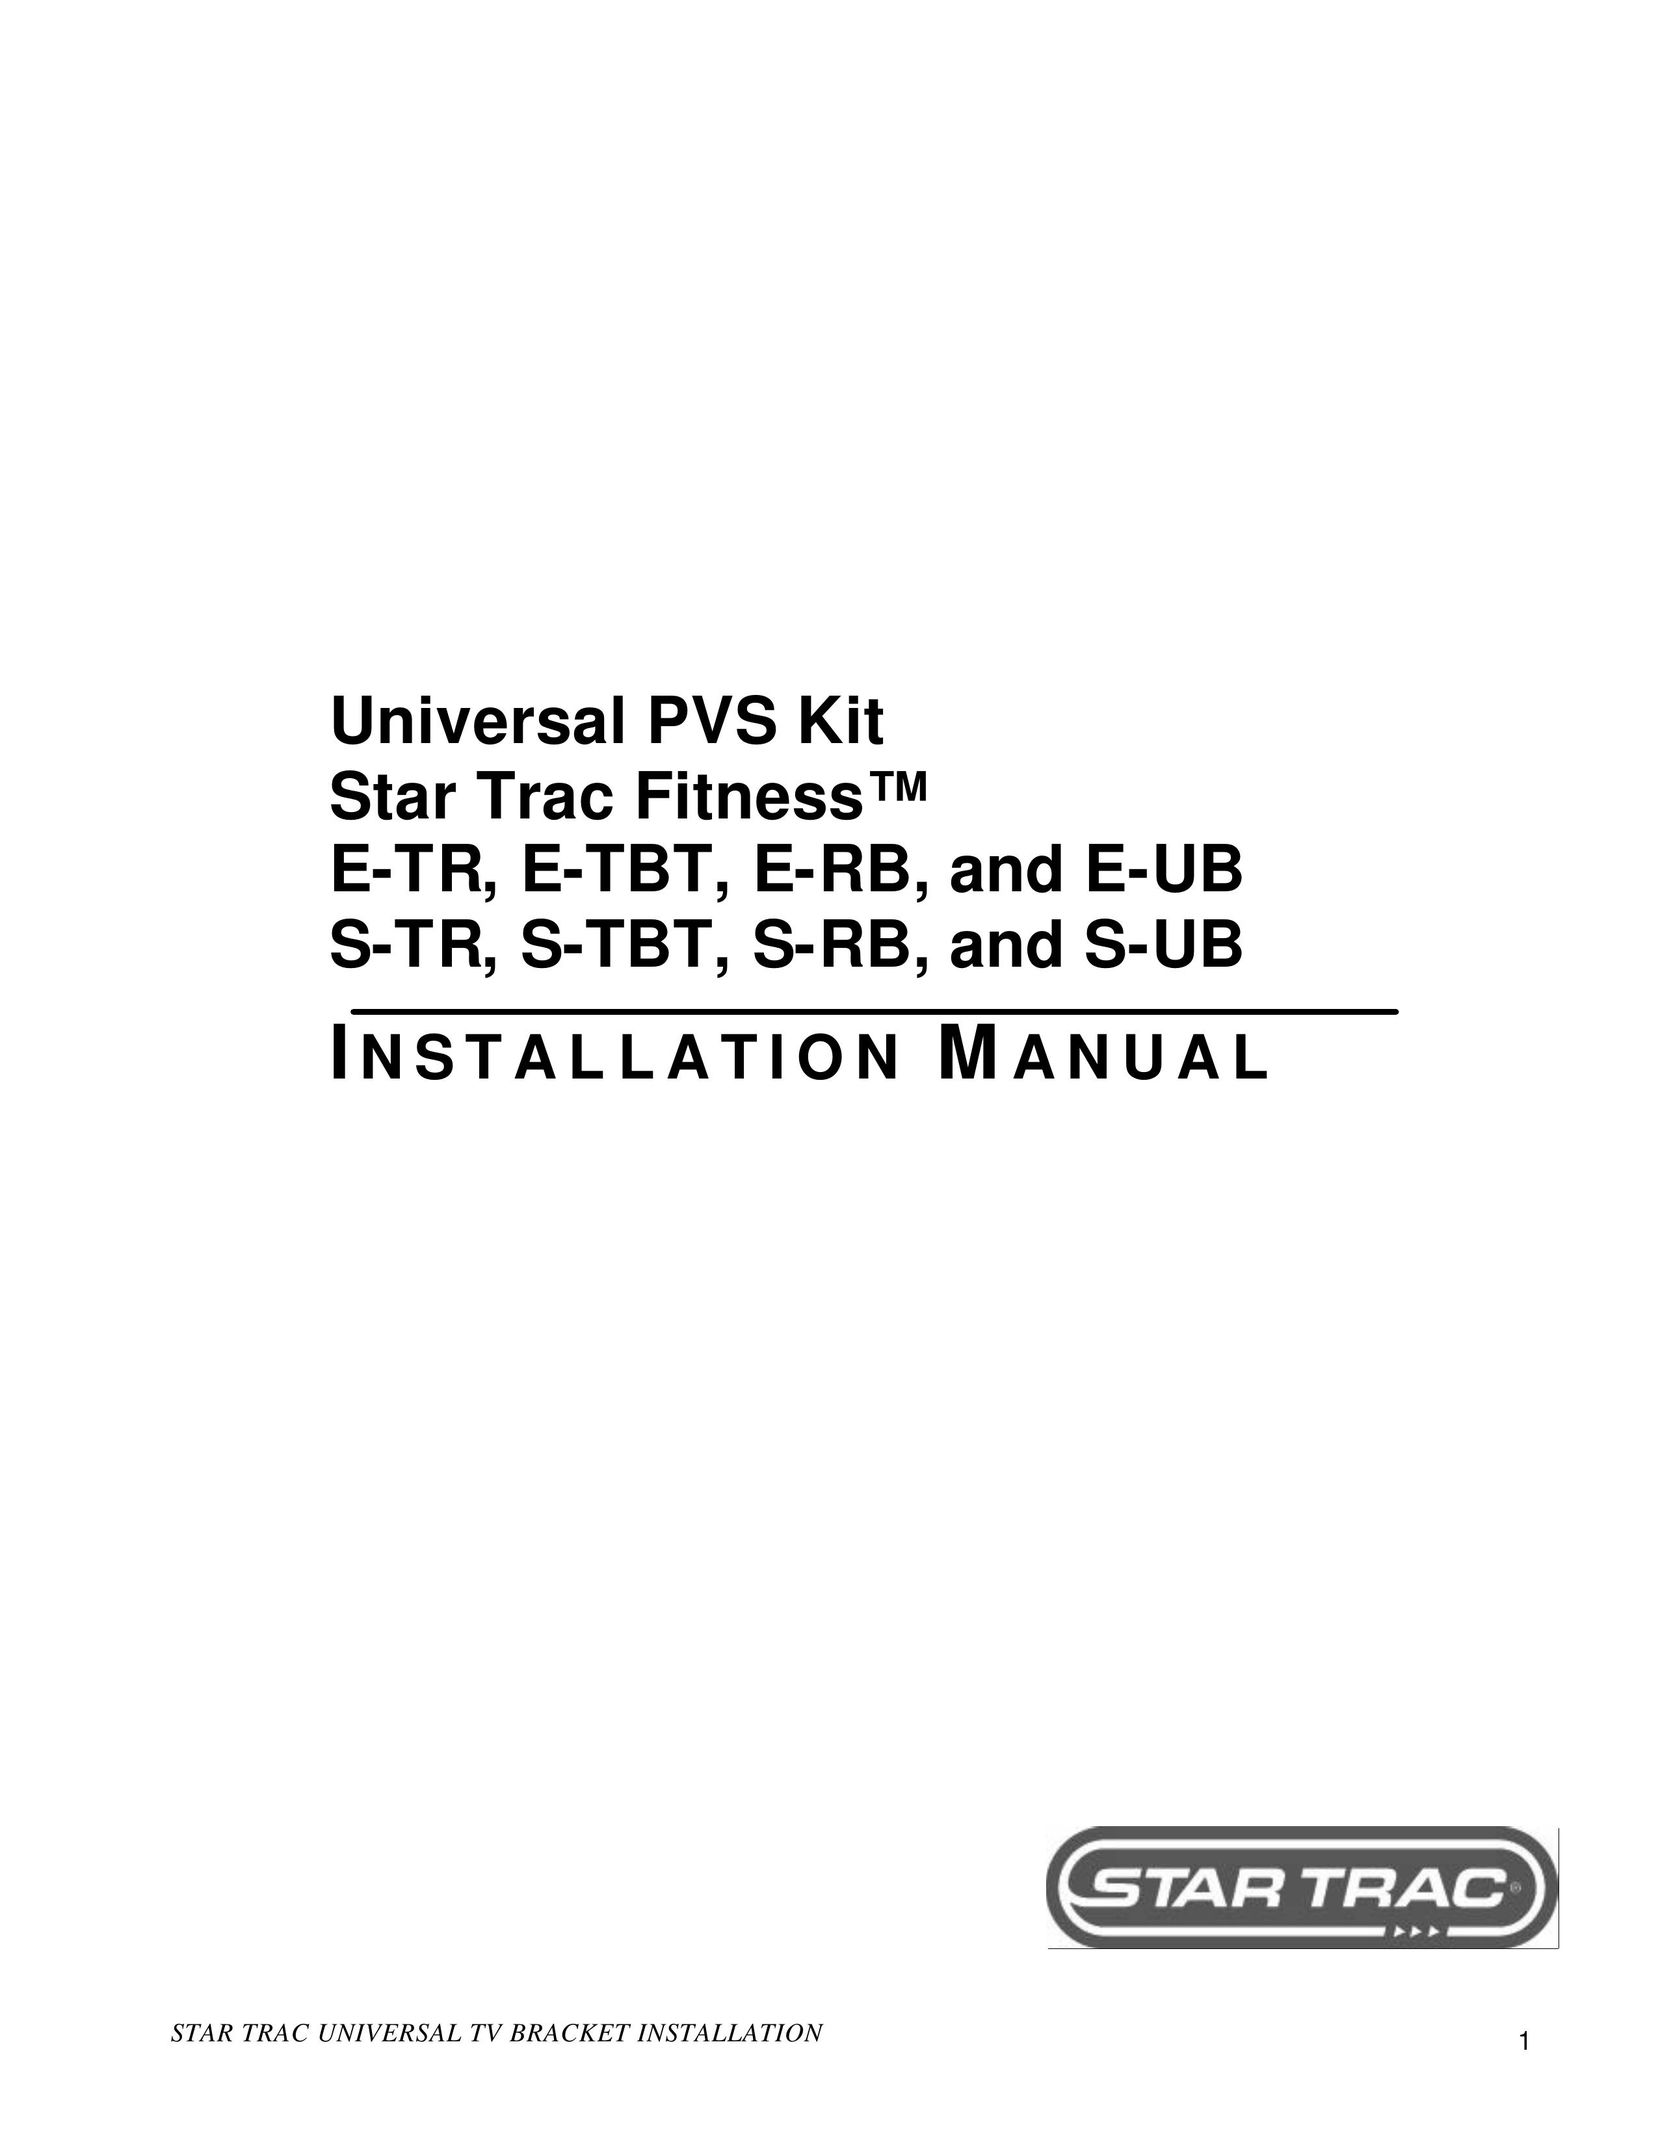 Star Trac E-TBT Home Gym User Manual